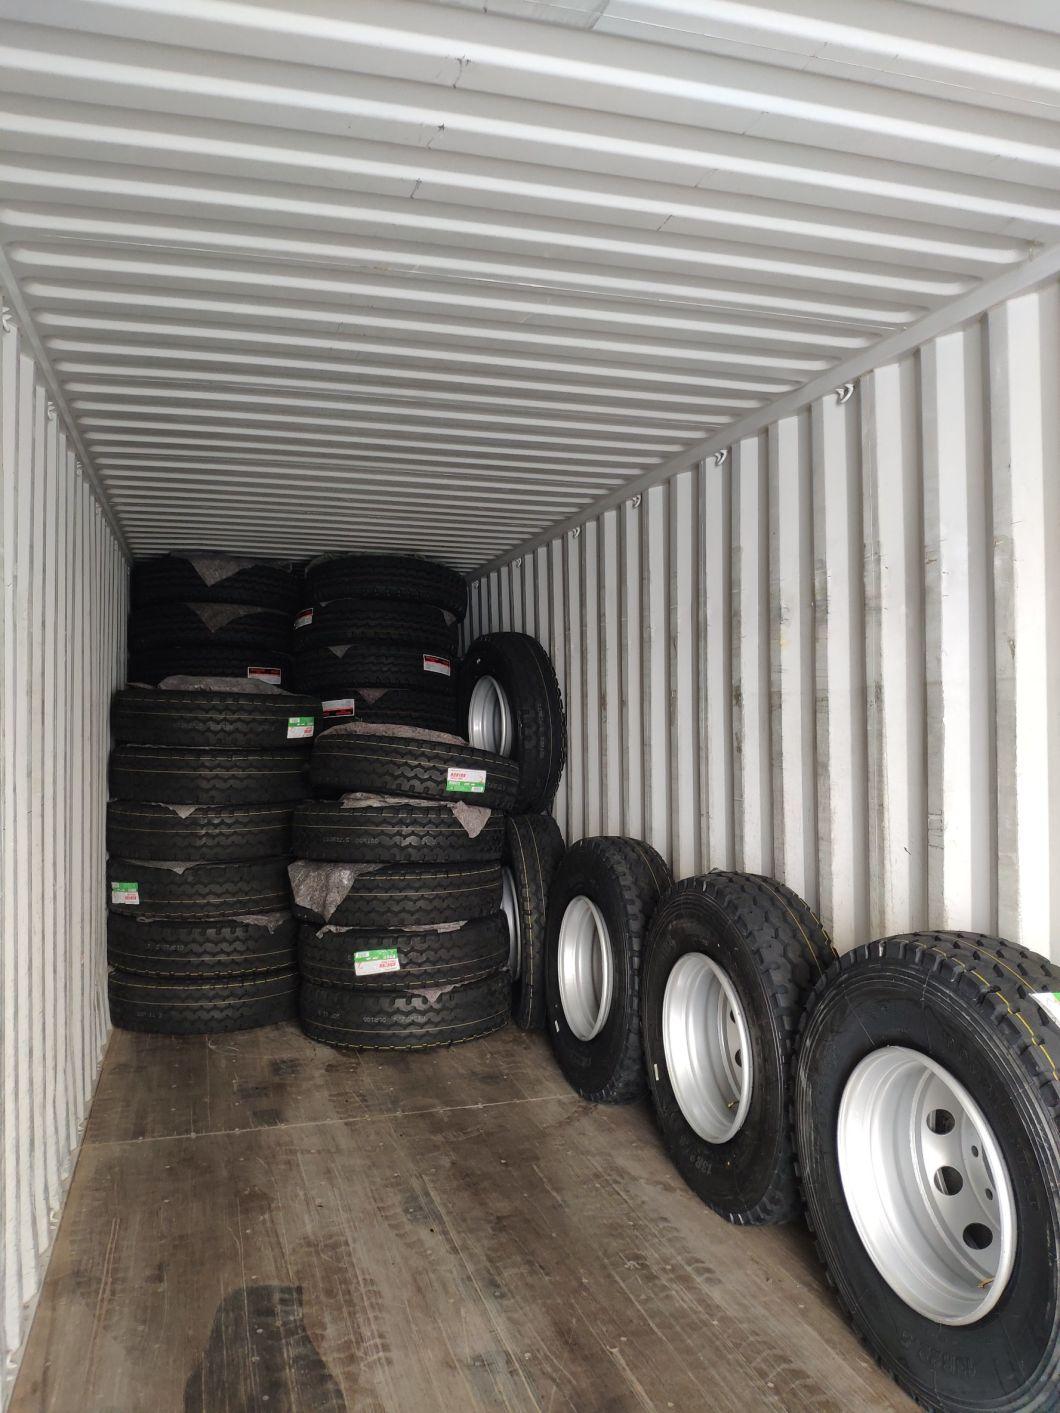 22.5X8.25/9.00/11.75/14.00 Rubber Front Rear Trailer Truck Lorry HK Tires Steel Wheels Rims